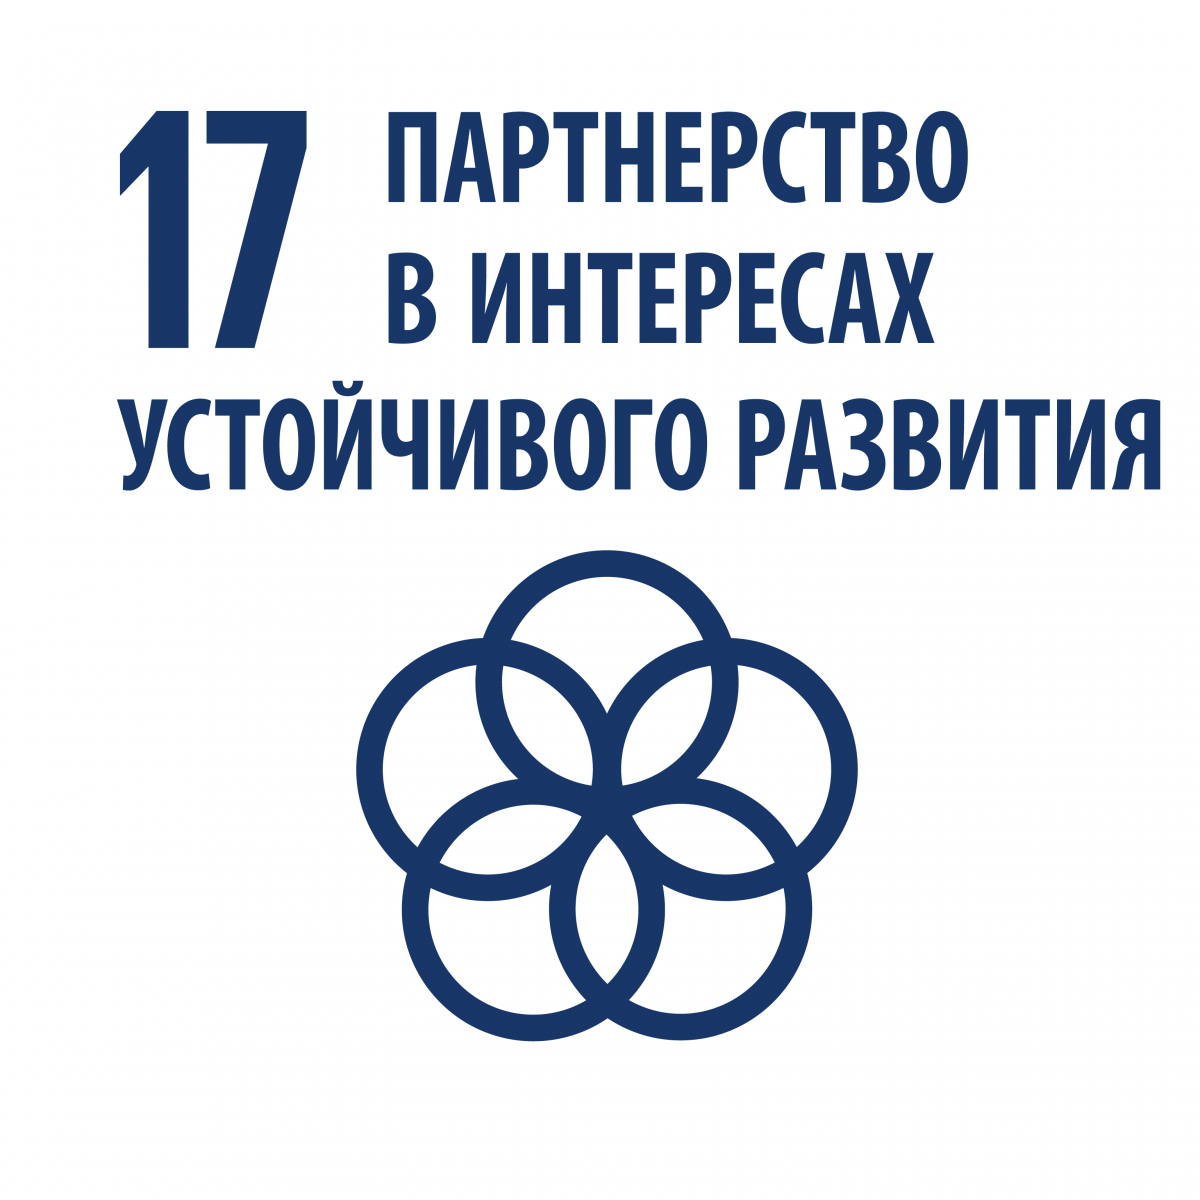 17 Целей устойчивого развития ООН. Партнерство в интересах устойчивого развития цель 17. Партнерство а интересах устойчивого развития ООН. Цели устойчивого развития ООН.